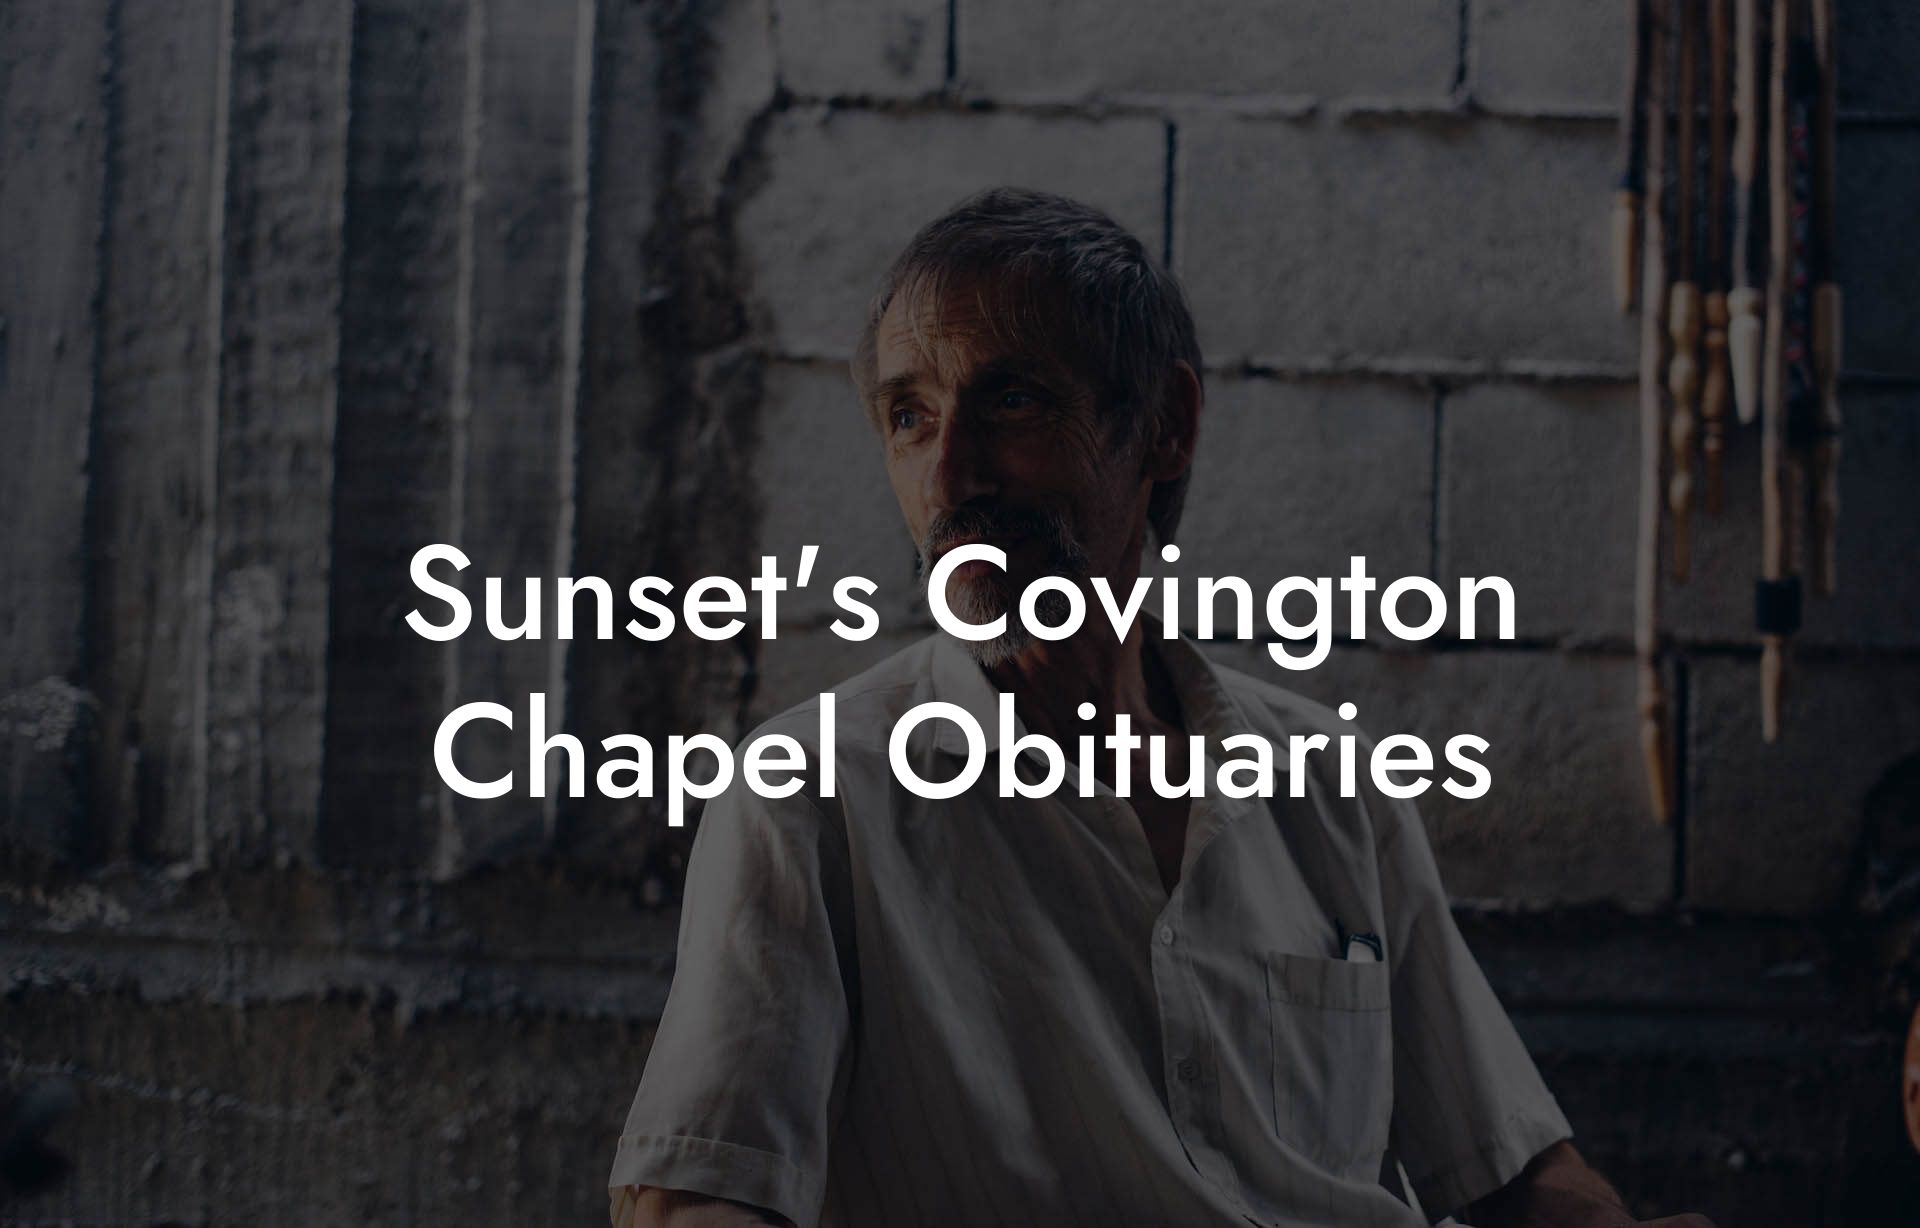 Sunset's Covington Chapel Obituaries